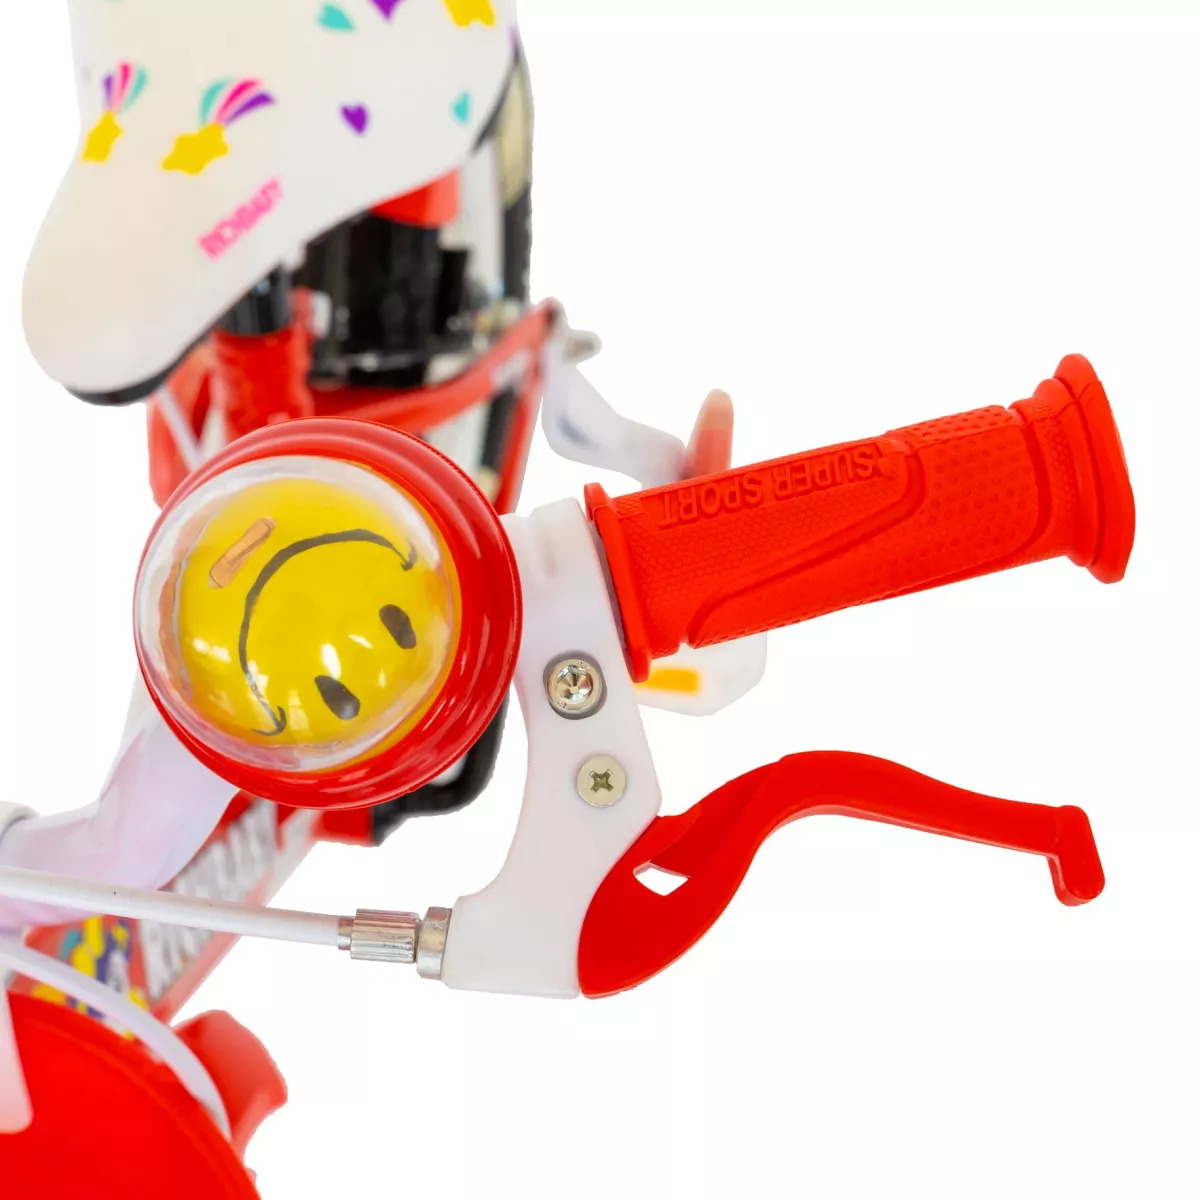 Bicicleta fete Rich Baby R1408A, roata 14", C-Brake, roti ajutatoare cu LED, 3-5 ani, rosu/alb